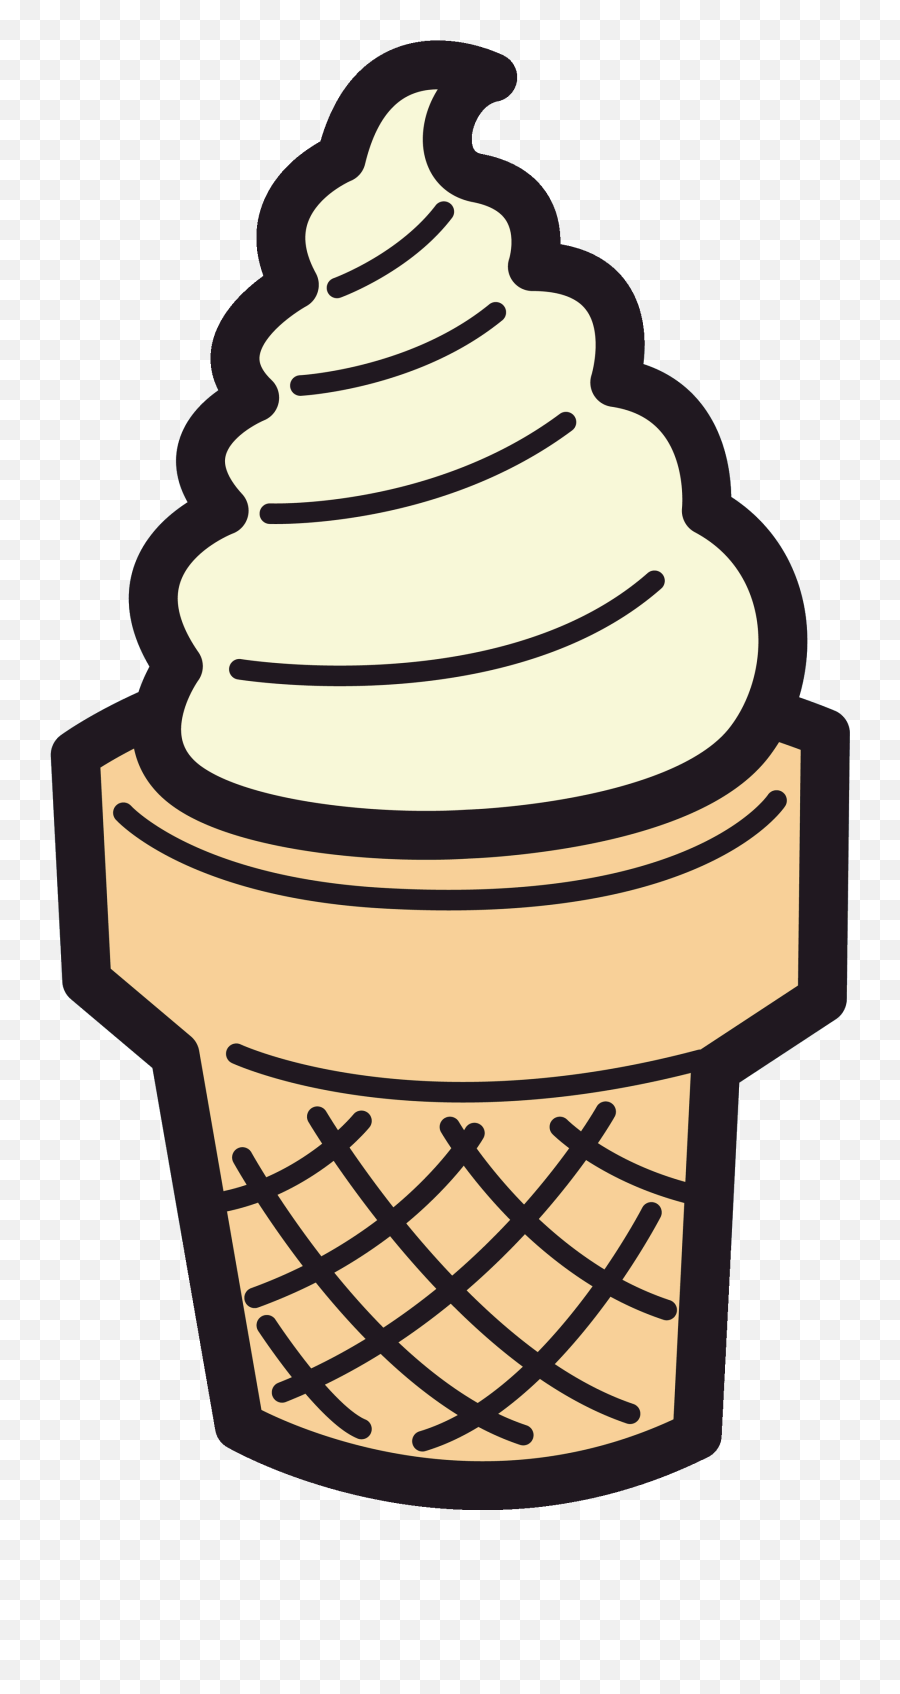 Ice Cream Cone Clipart Free Images 4 - Clip Art Emoji,Ice Cream Sun Emoji